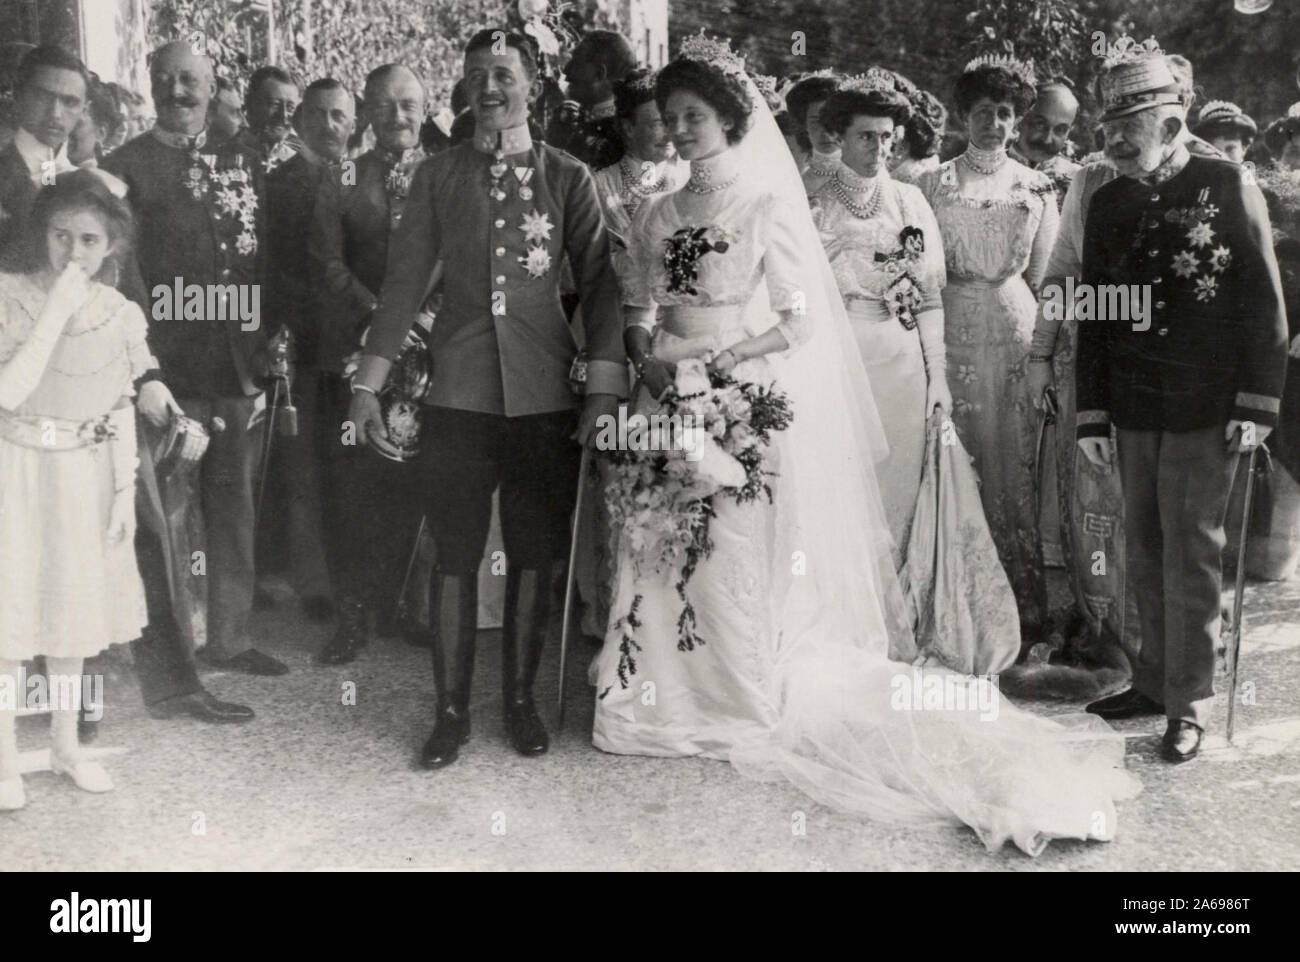 Mariage de l'archiduc Charles d'Autriche et de la Princesse Zita de Bourbon-Parme à Schwarzau Palace. Octobre 21, 1911 Banque D'Images